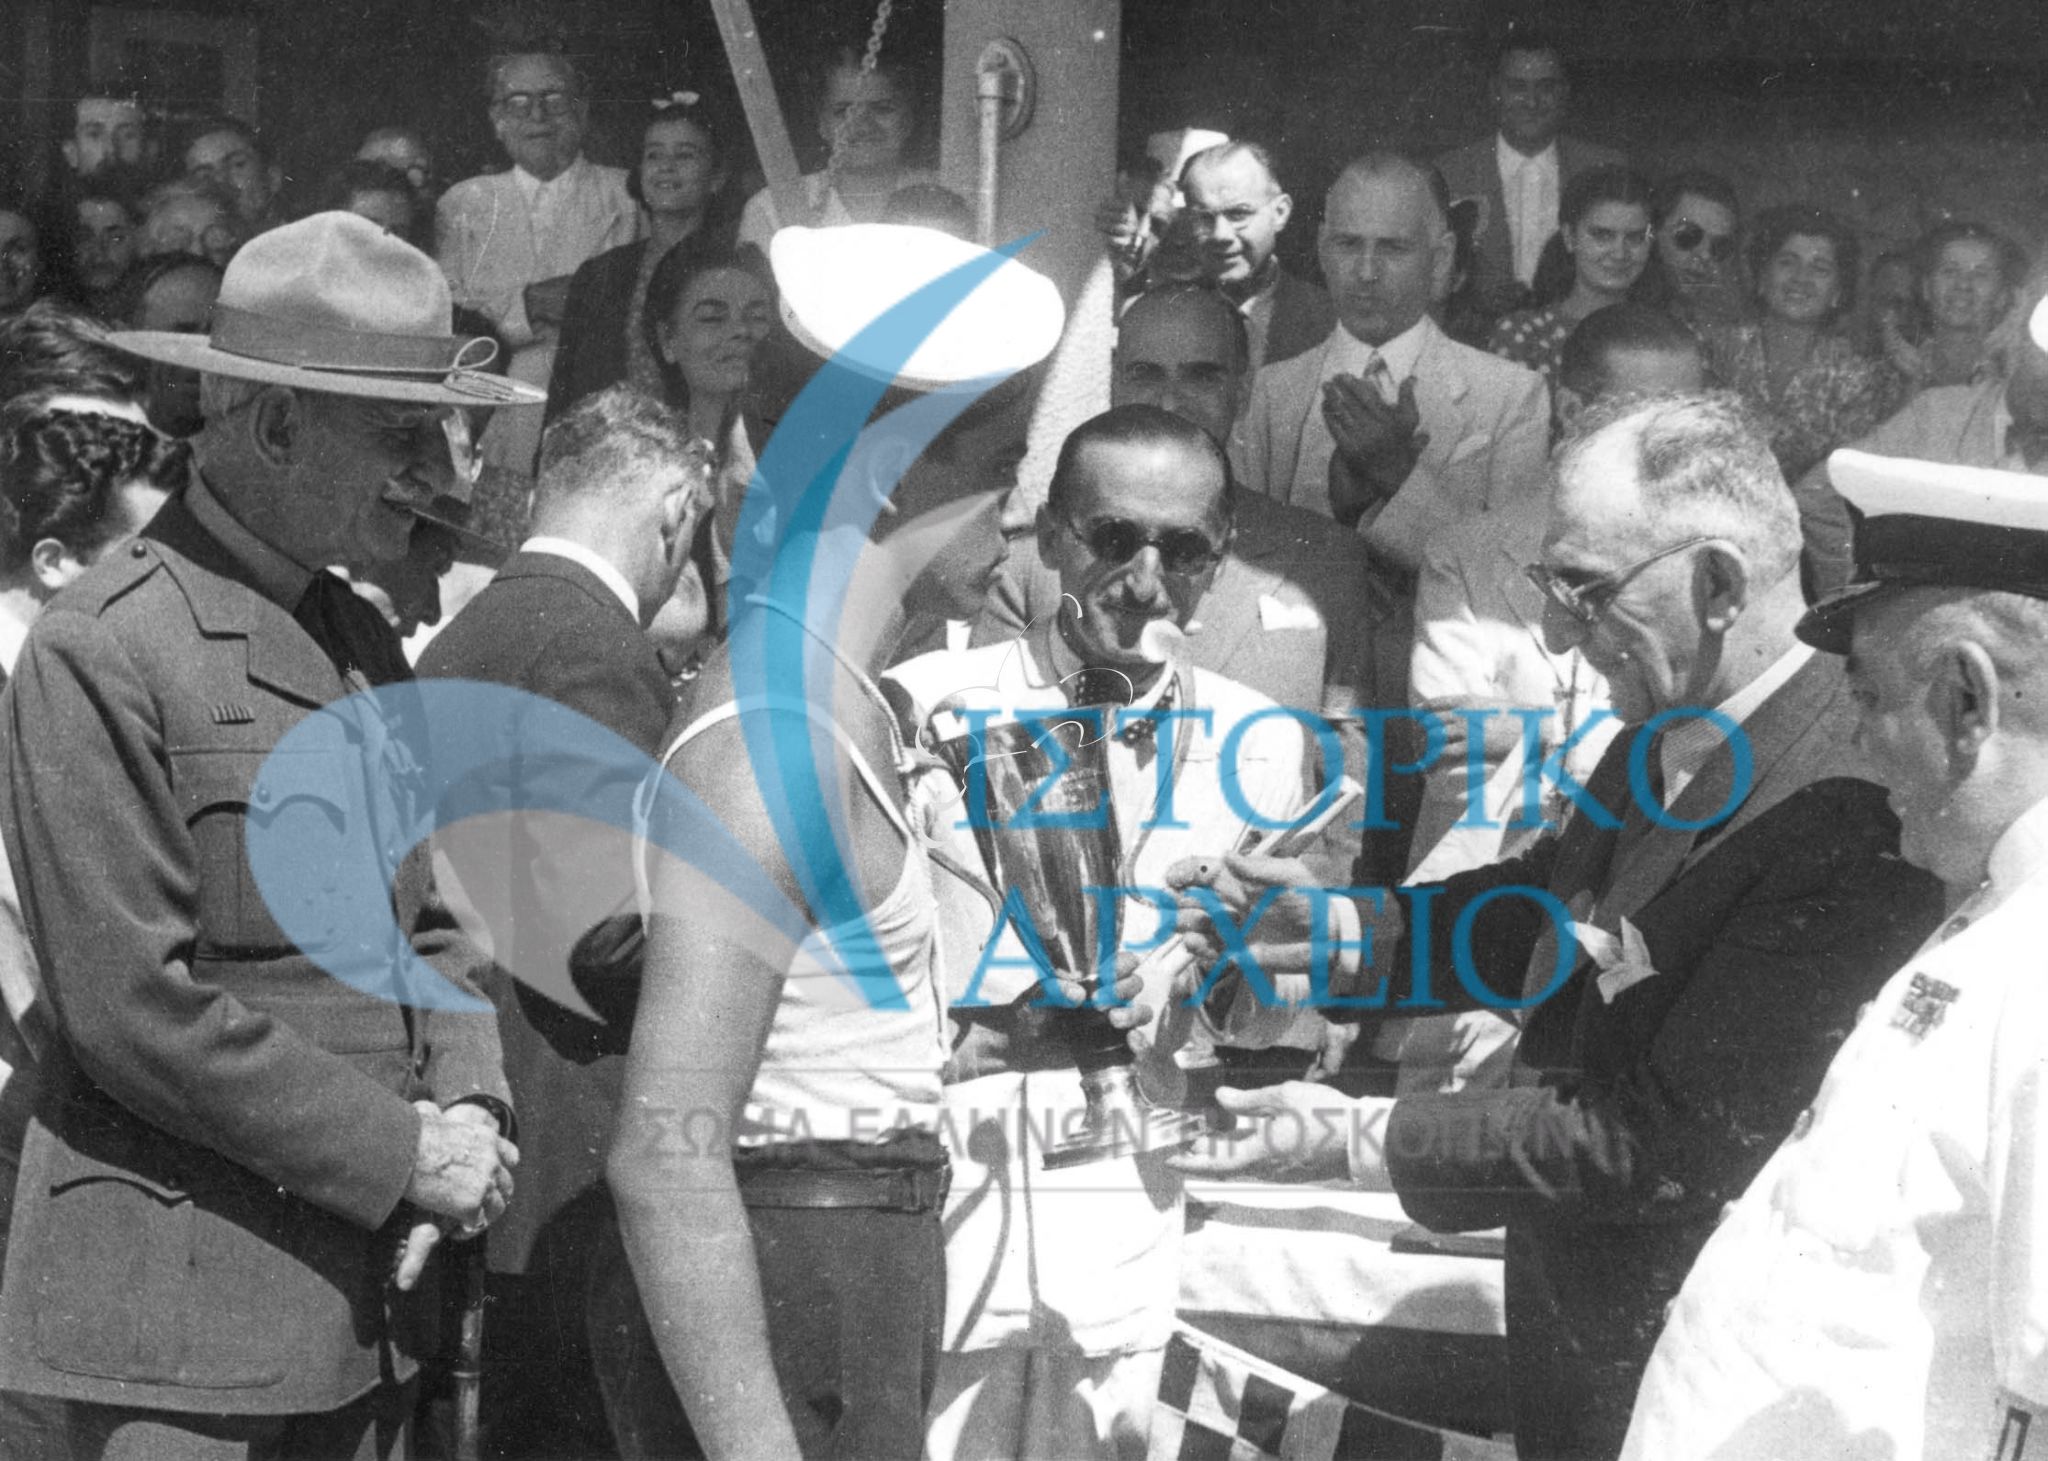 Ο Υπουργός Εμπορικής Ναυτιλίας Βουλγαρίδης απονέμει έπαθλο σε ομάδα που νίκησε στους Ναυτοπροσκοπικούς Αγώνες Αθηνών το 1948 στο Π. Φάληρο.